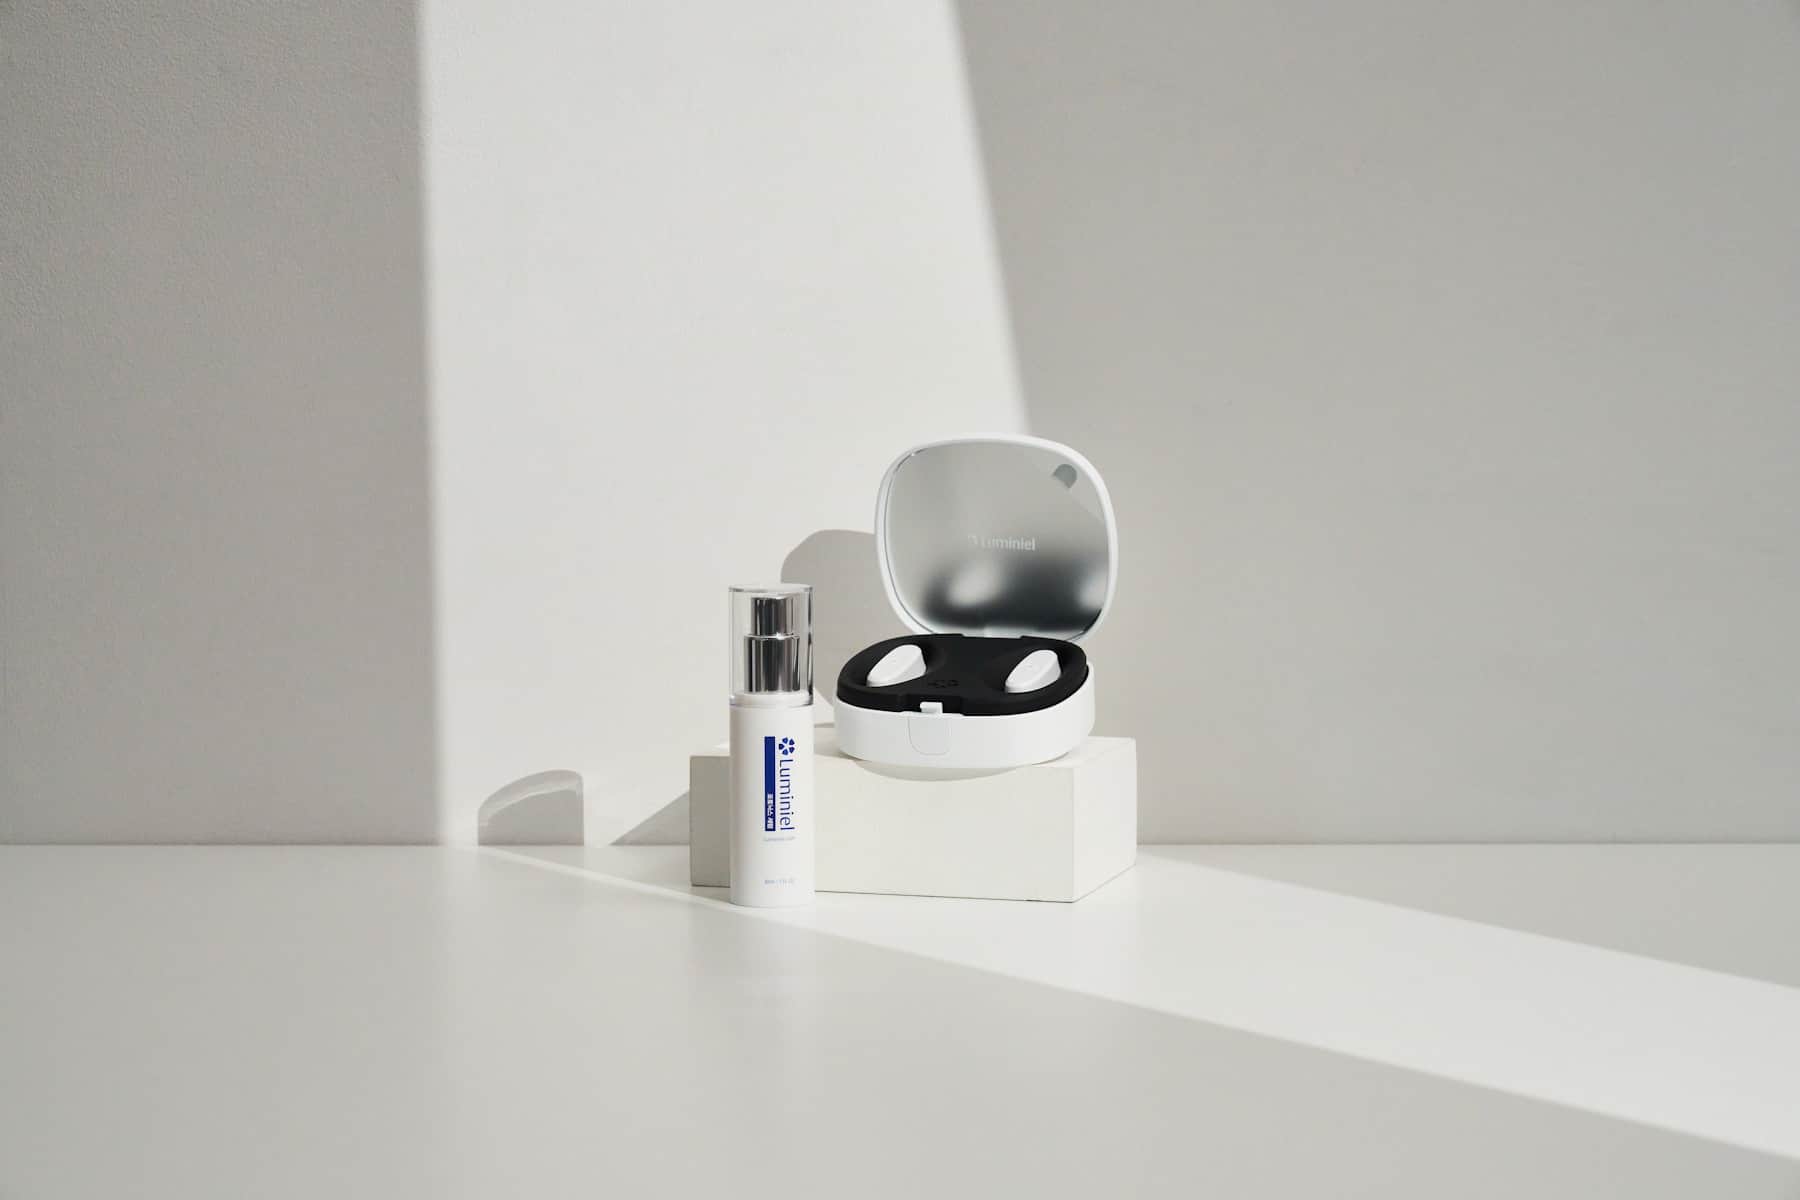 Luminiel-I: LED Eye Patch for Anti-Ageing, Sagging Skin & Dark Circles